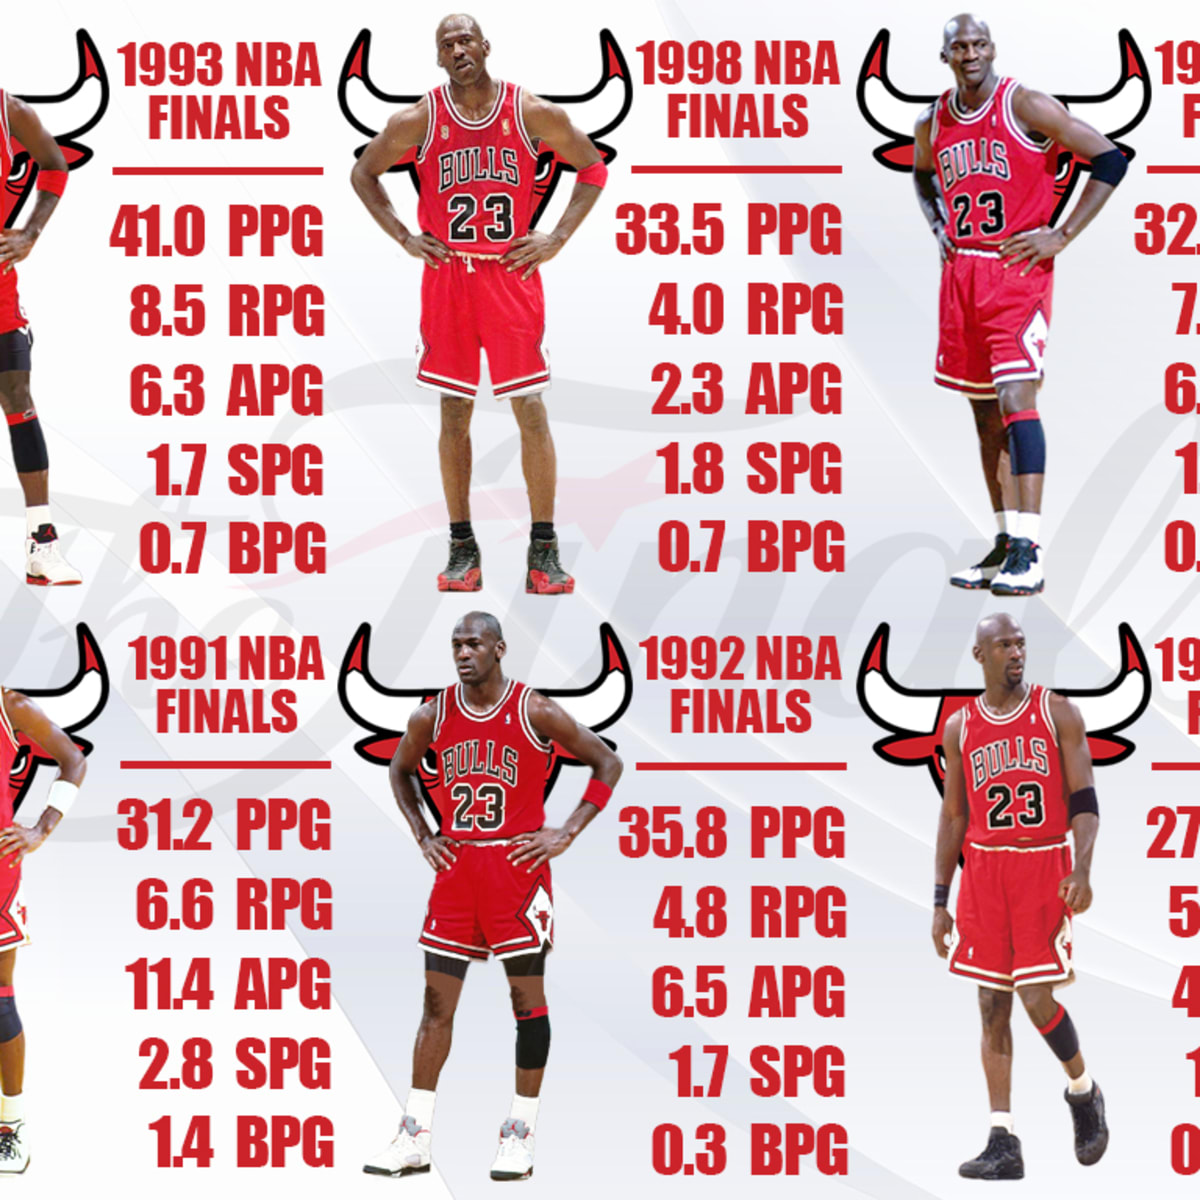 Michael Jordan - 1993 Finals MVP Full Highlights vs Suns 